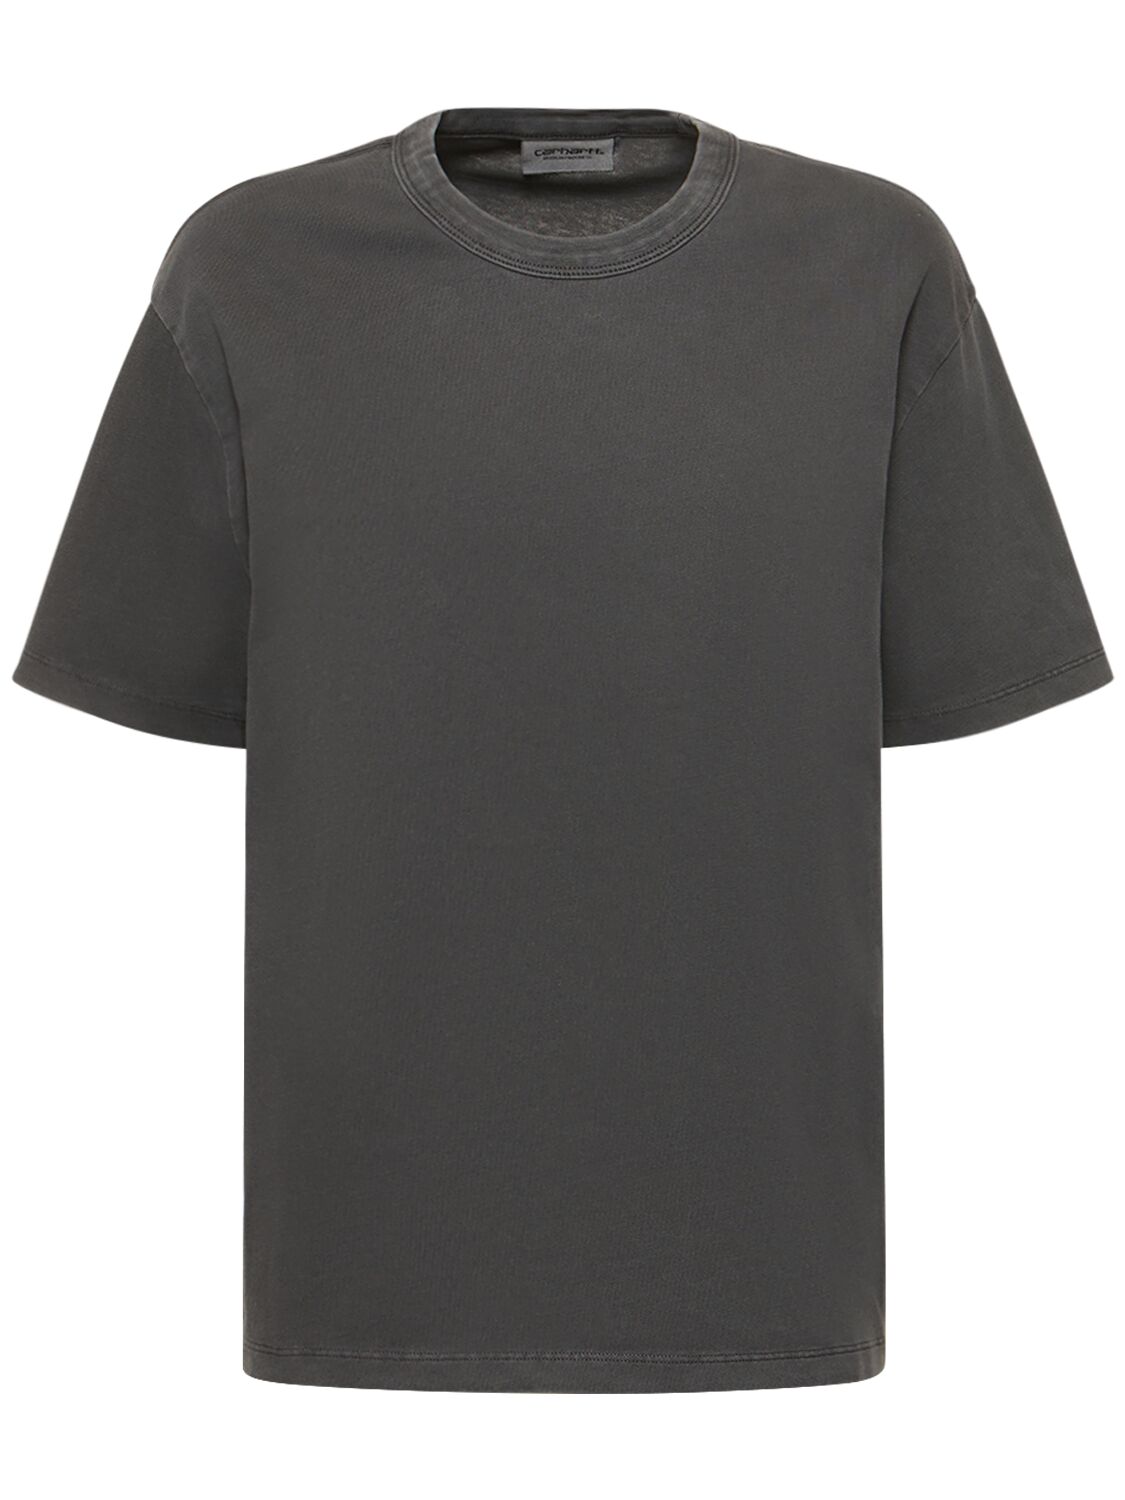 Carhartt Taos T-shirt In Flint Garment D